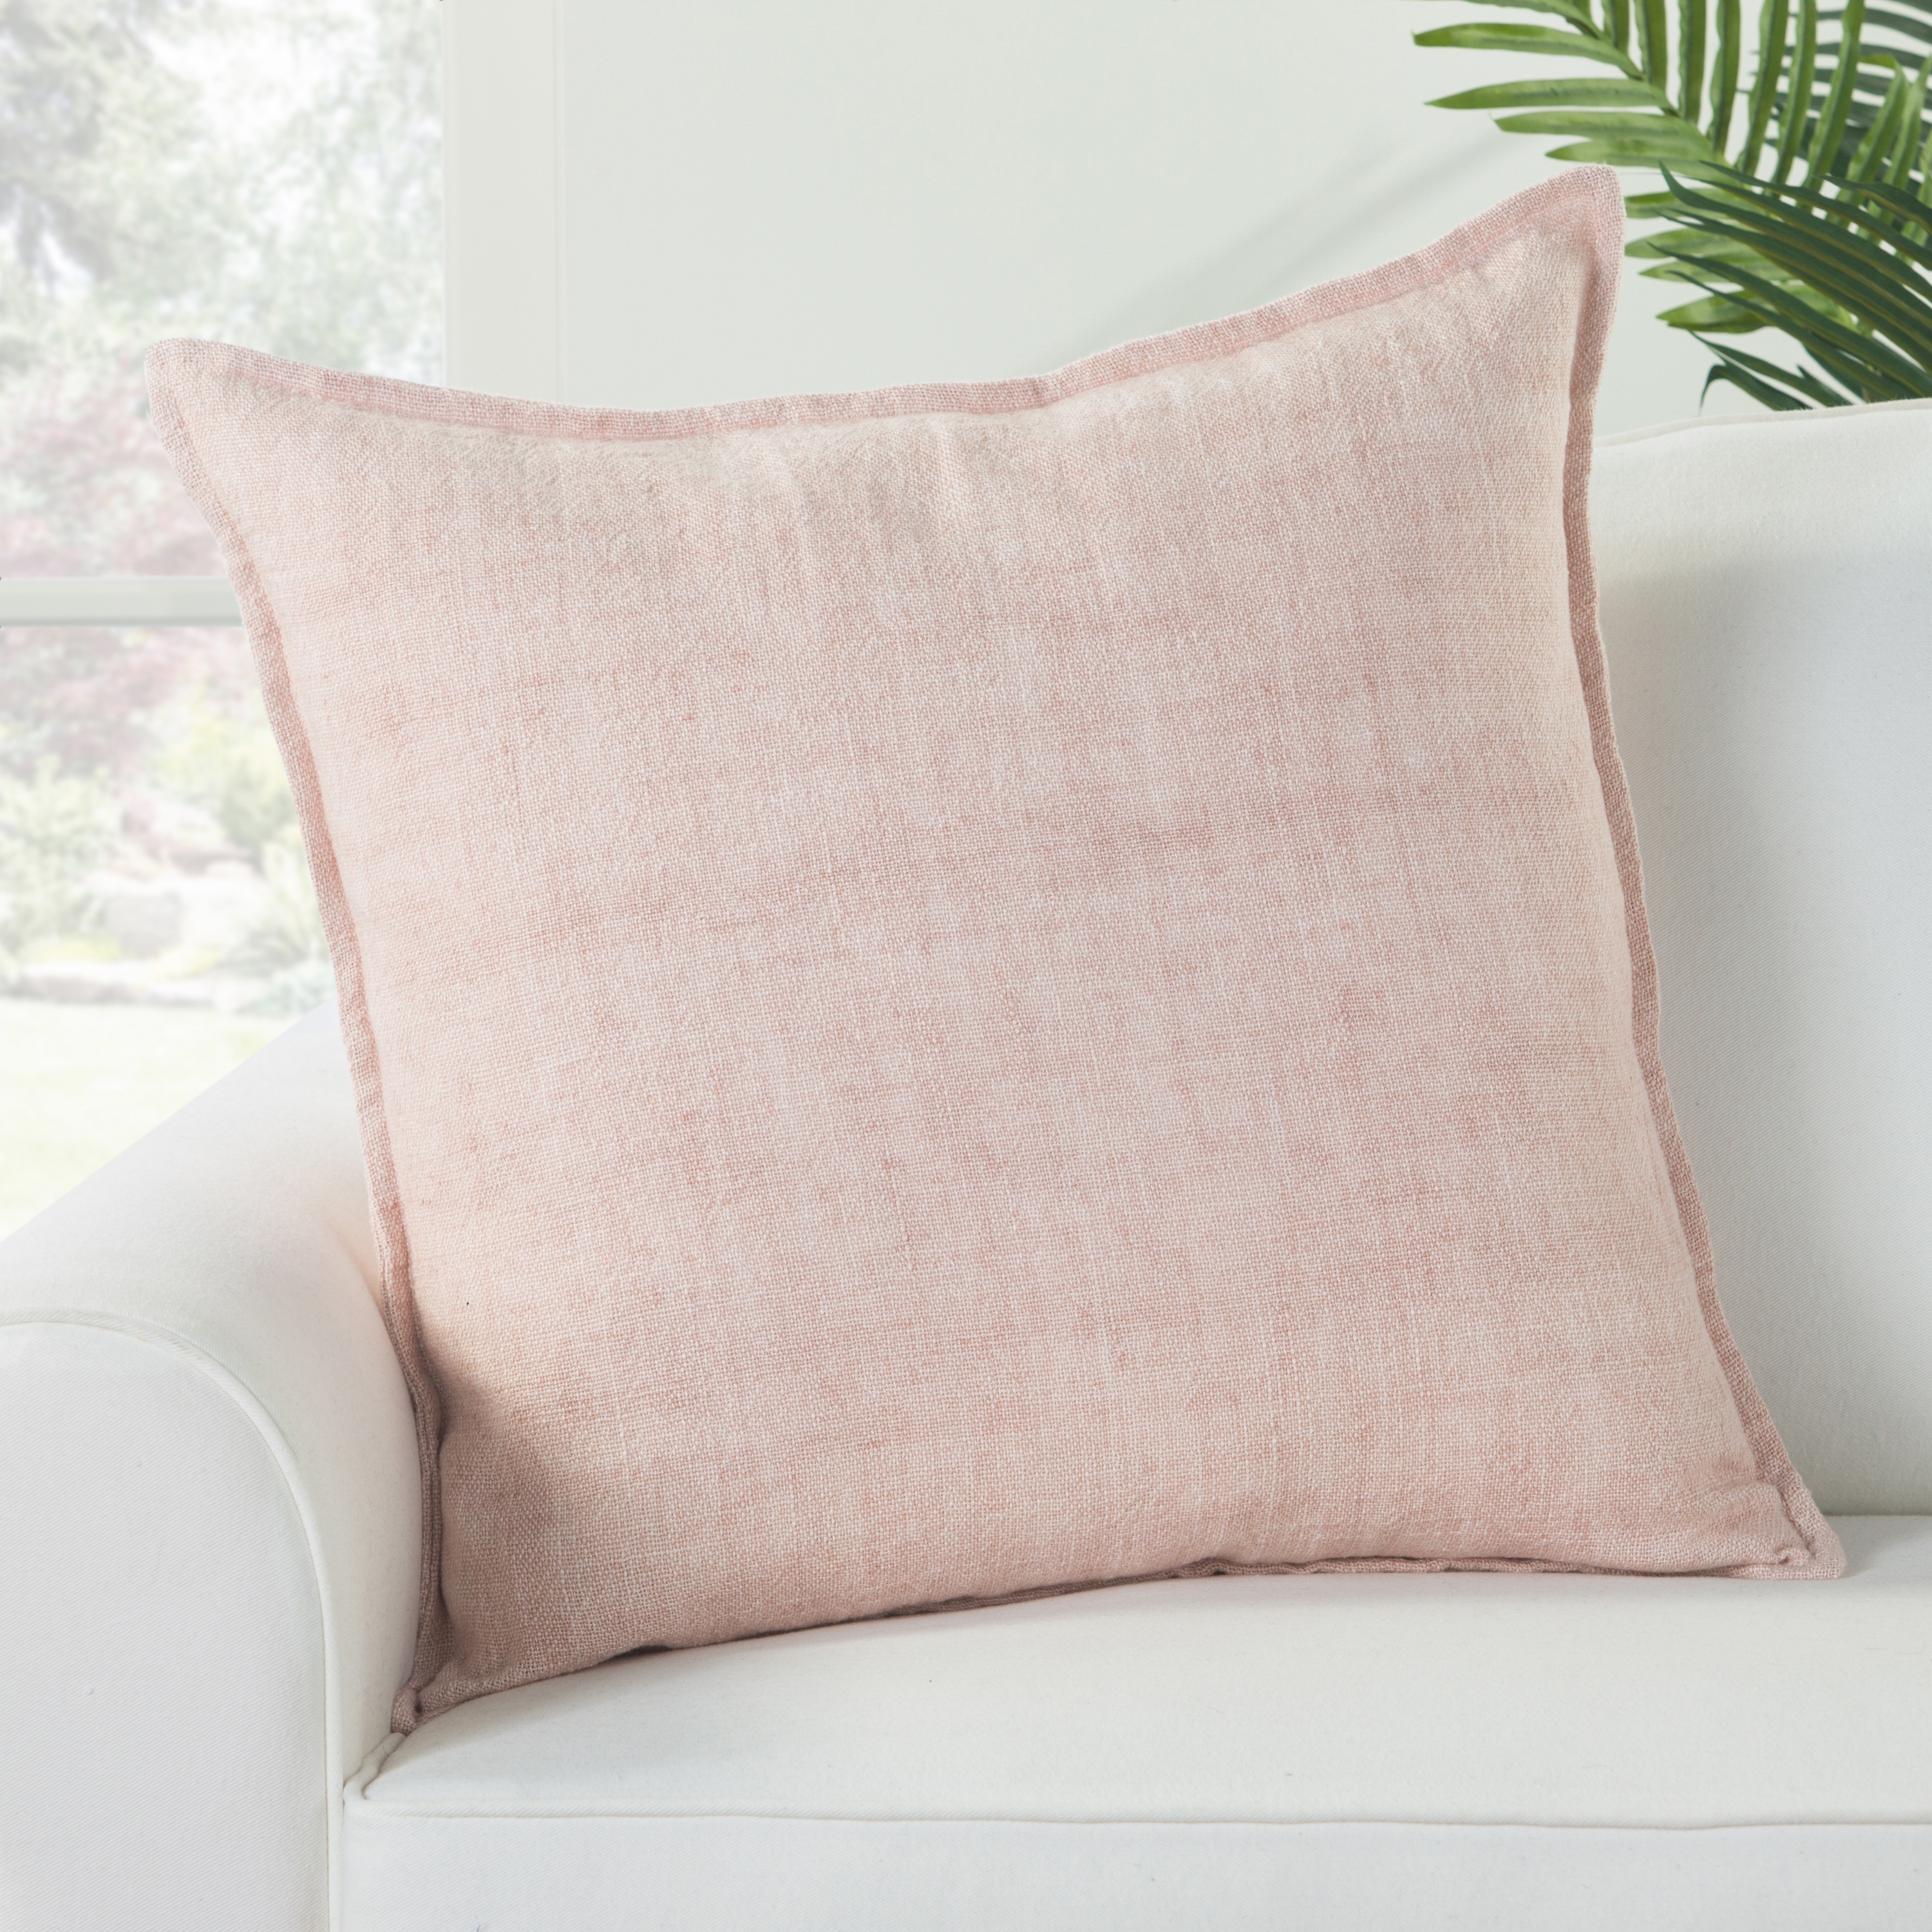 Design (US) Light Pink 22"X22" Pillow - Image 3